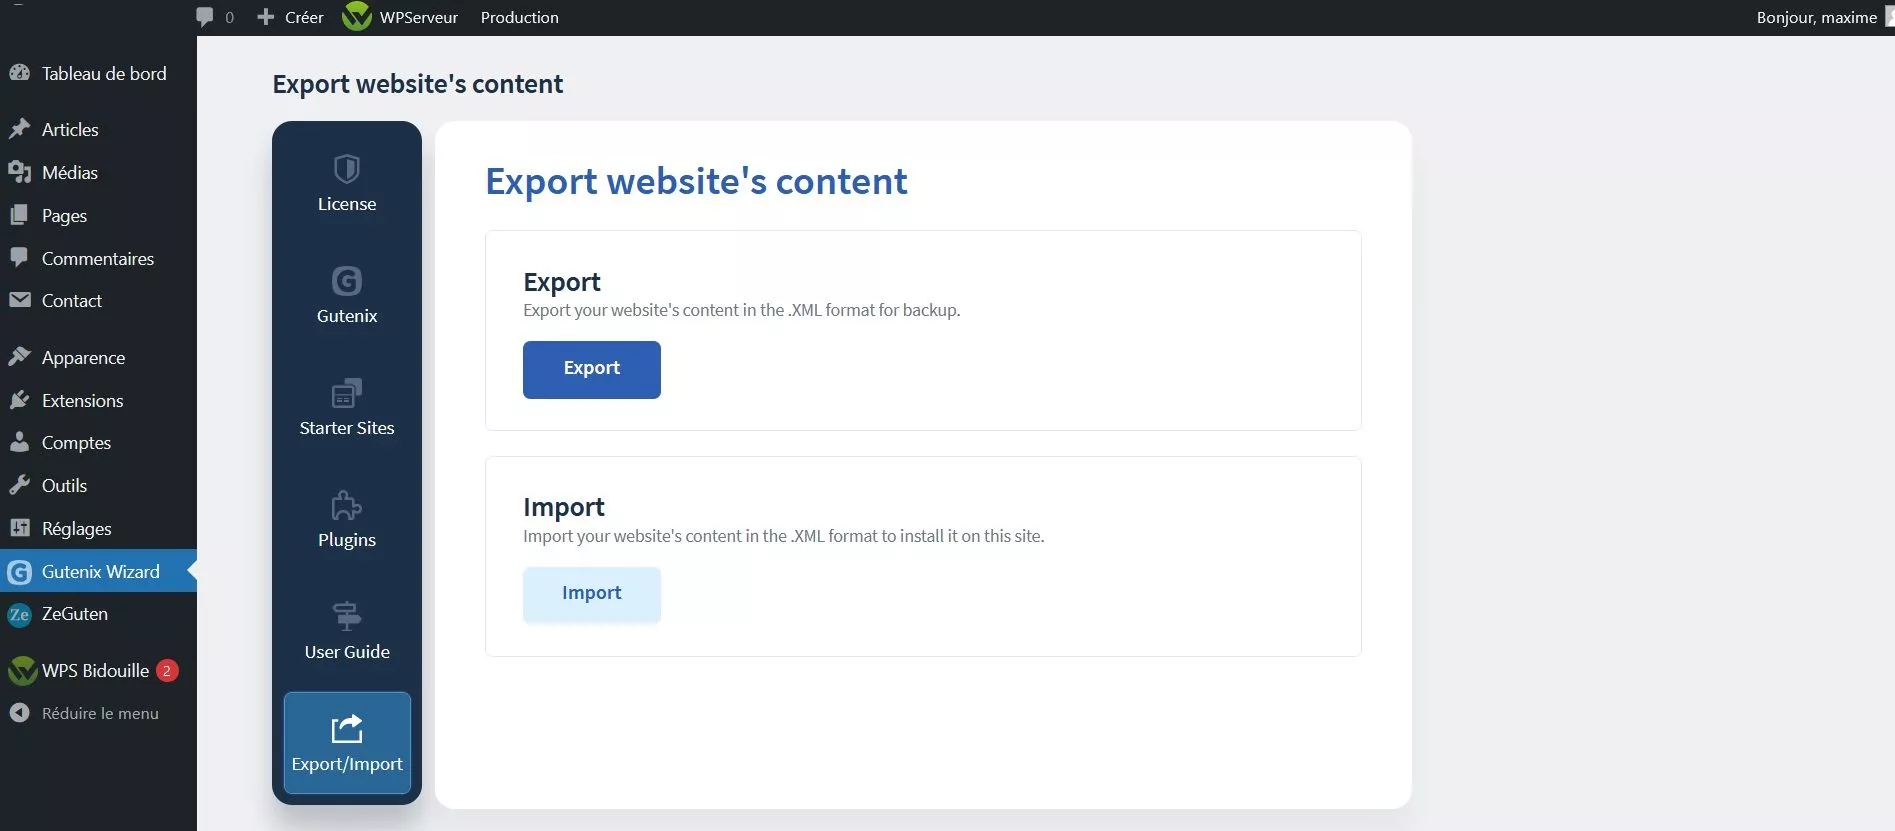 Gutenix Wizard inclut aussi une option d’import/export de vos données.